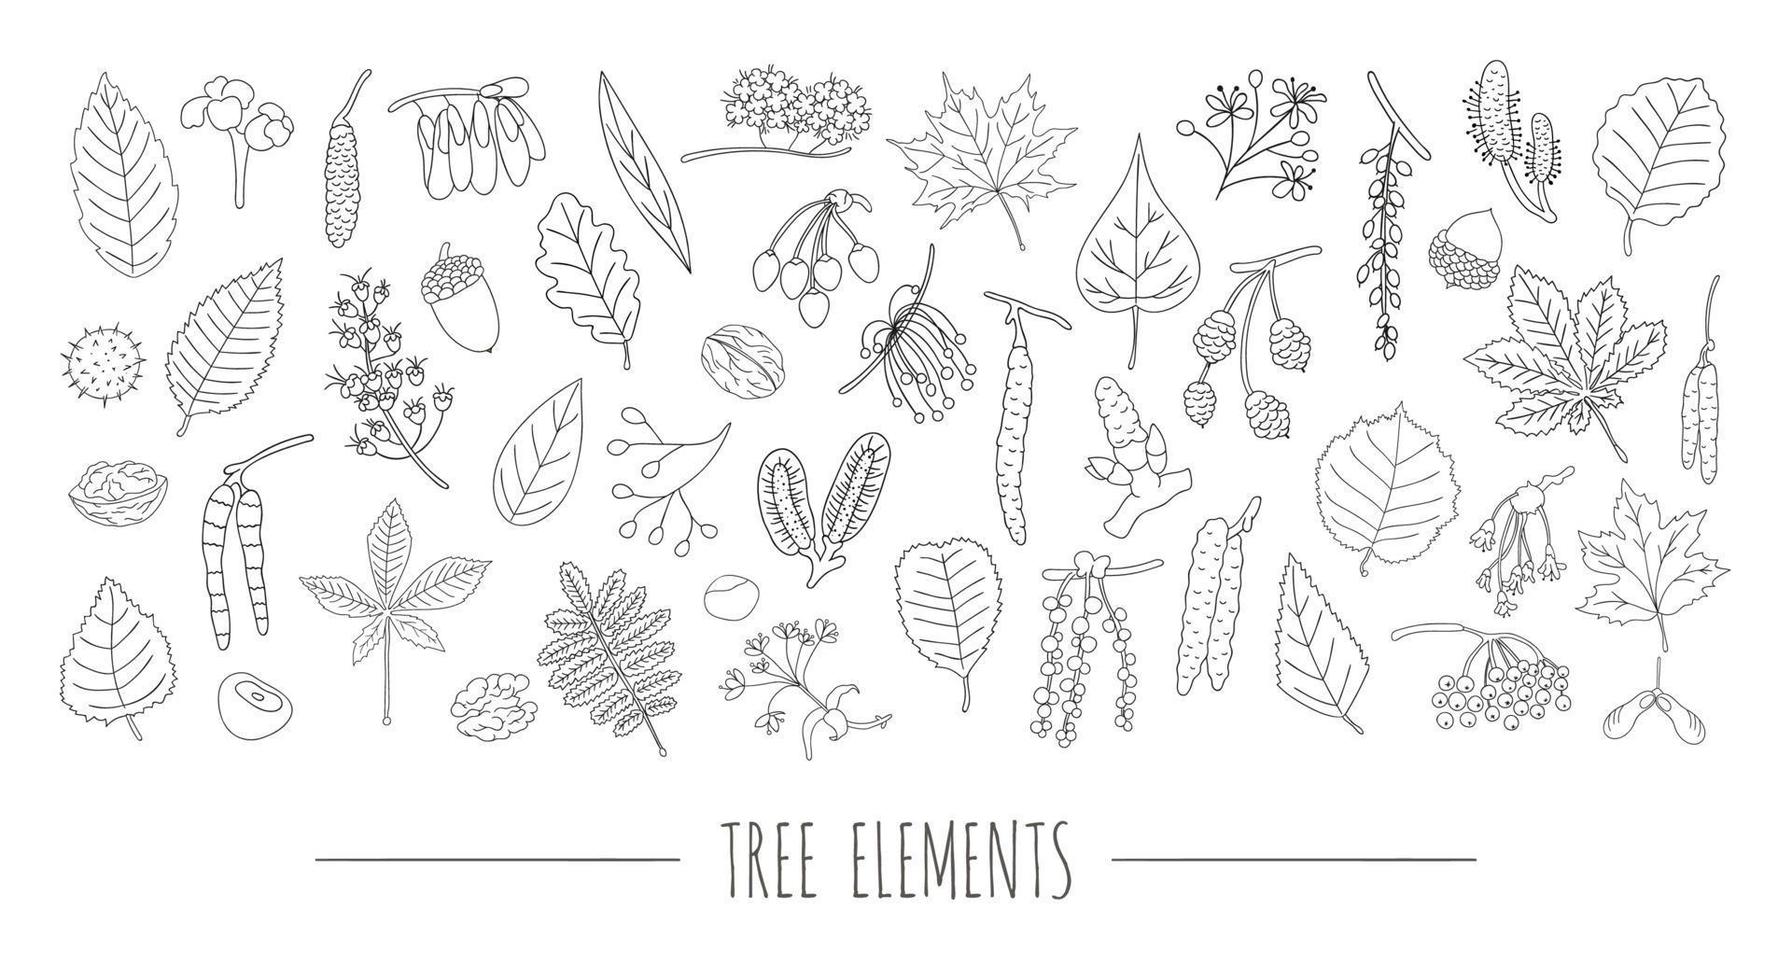 vector conjunto de elementos de árbol en blanco y negro aislado sobre fondo blanco. colorido paquete de abedul, arce, roble, serbal, castaño, avellana, tilo, aliso, álamo temblón, olmo, hojas de álamo